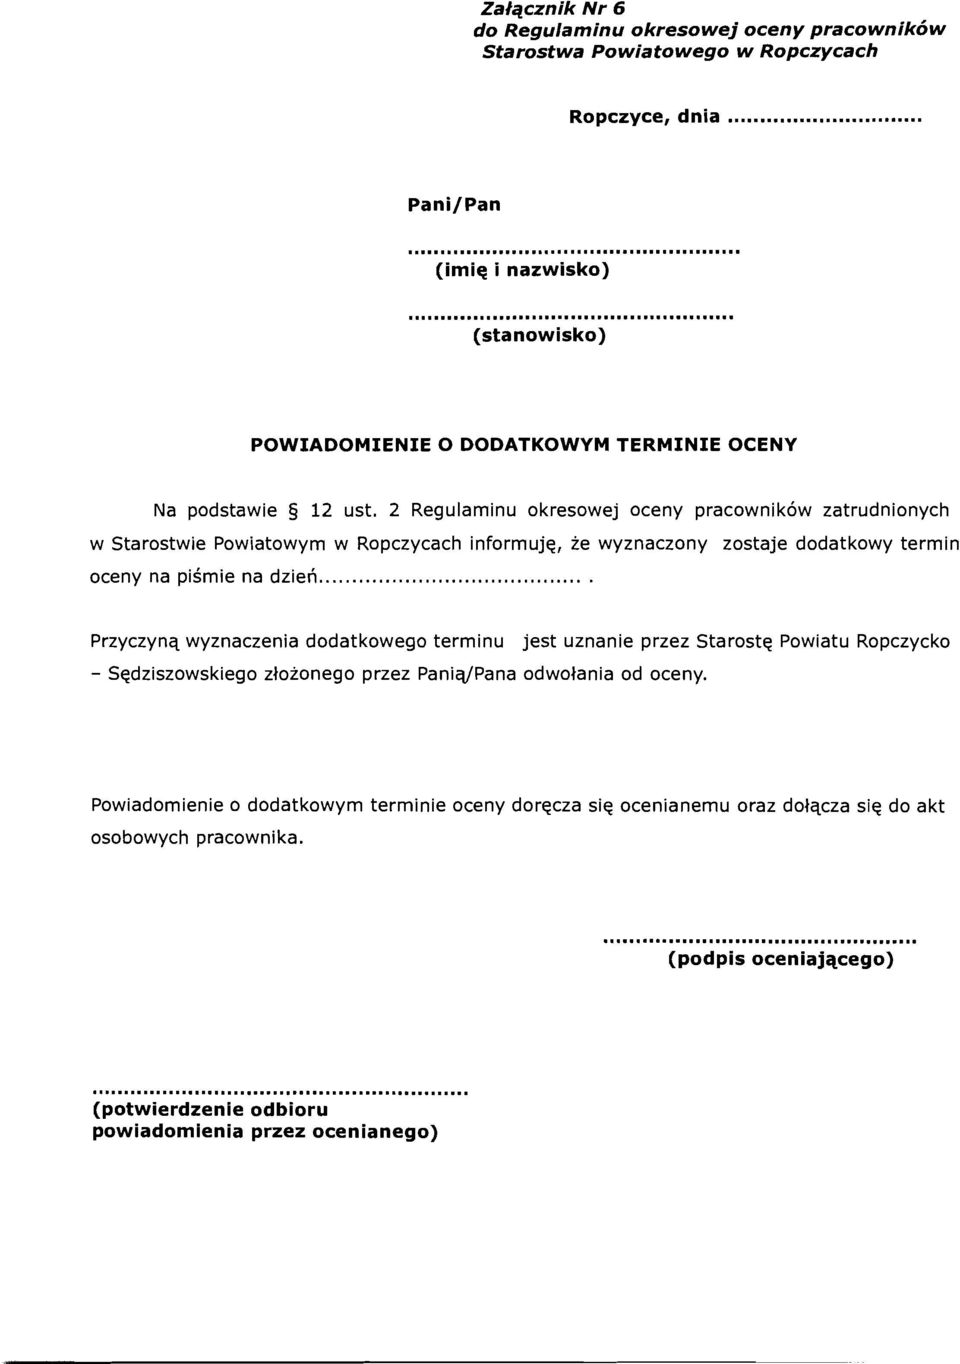 2 Regulaminu okresowej oceny pracownikow zatrudnionych w Starostwie Powiatowym w Ropczycach informuje, ze wyznaczony zostaje dodatkowy termin oceny na pismie na dzieri.